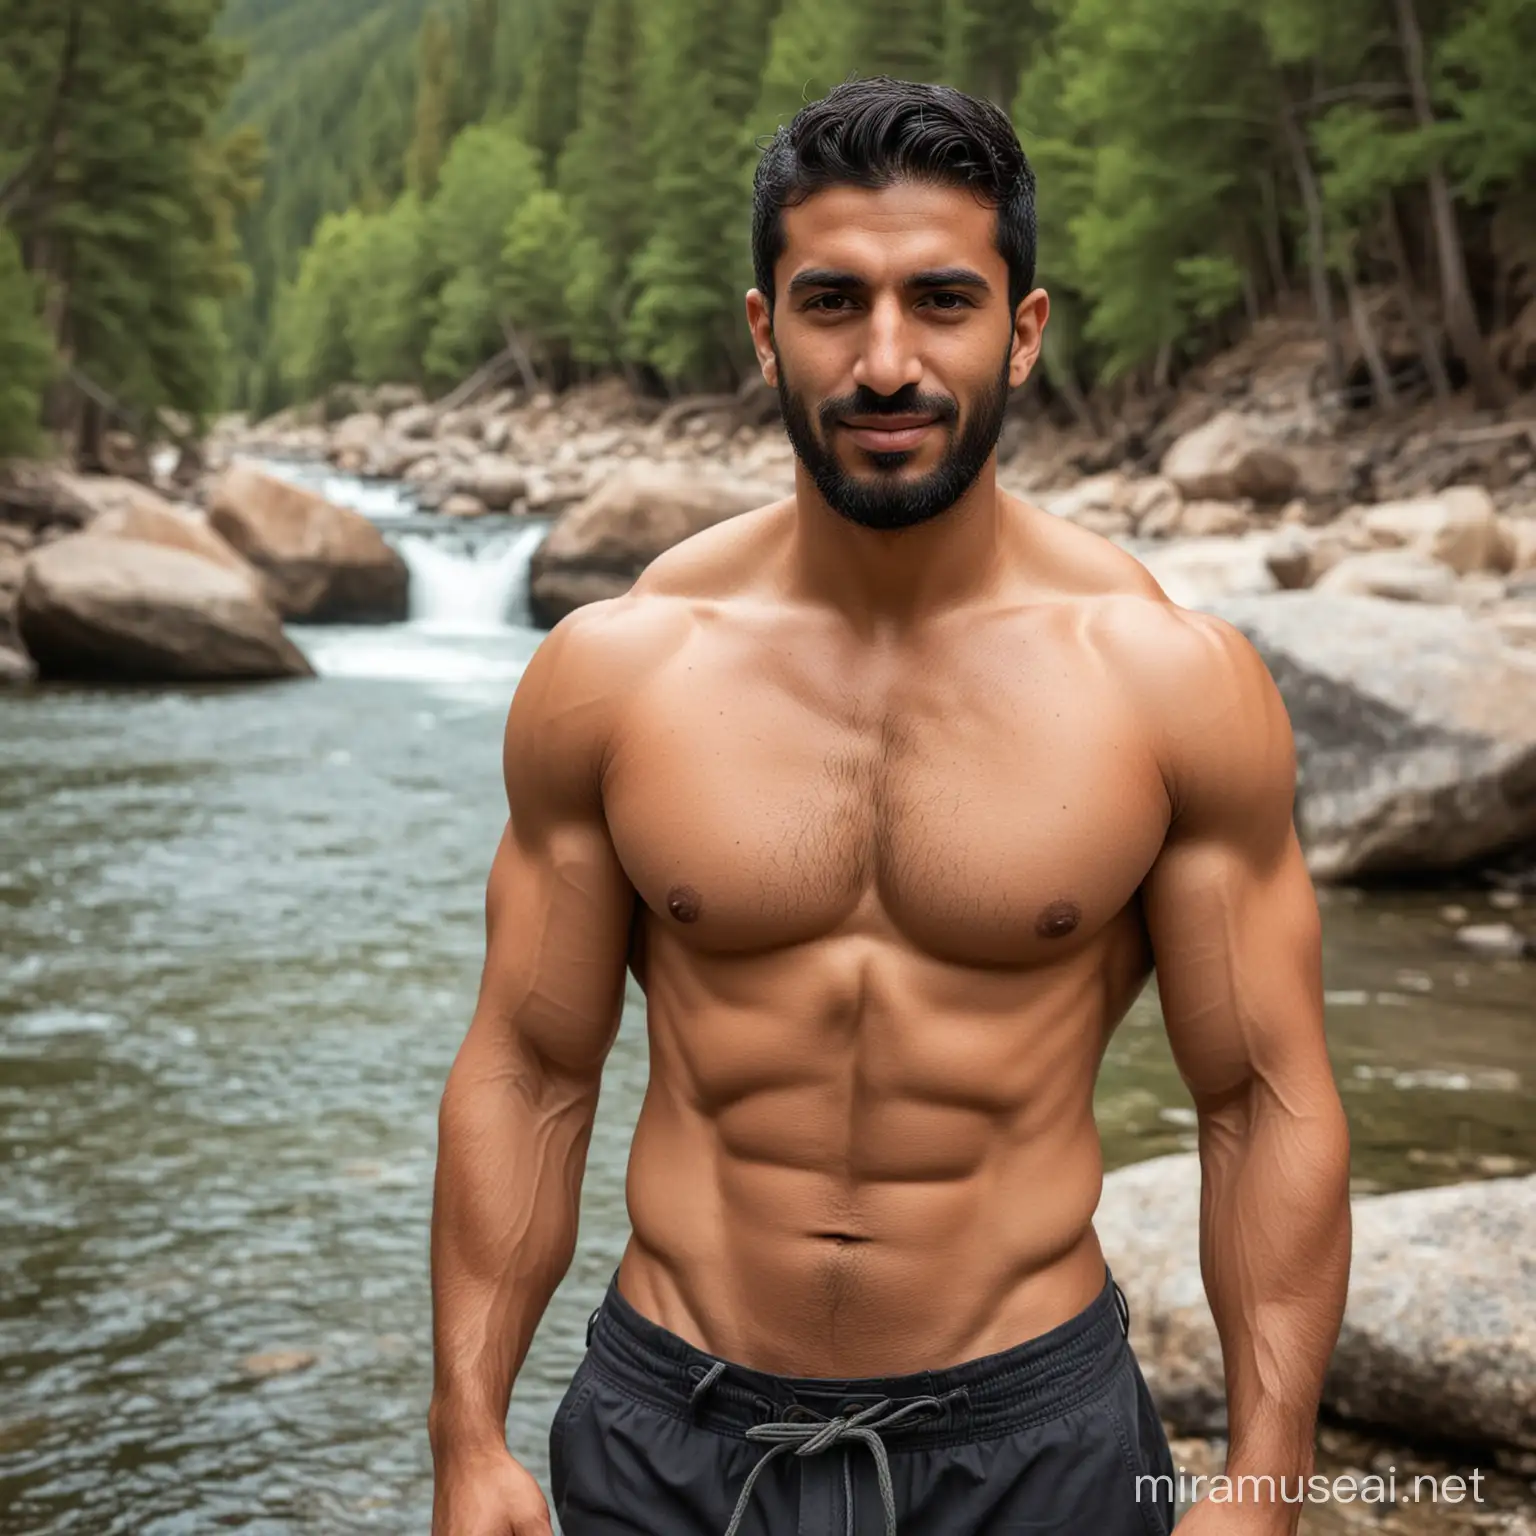 Shirtless Middle Eastern Man Enjoying Serene Mountain River